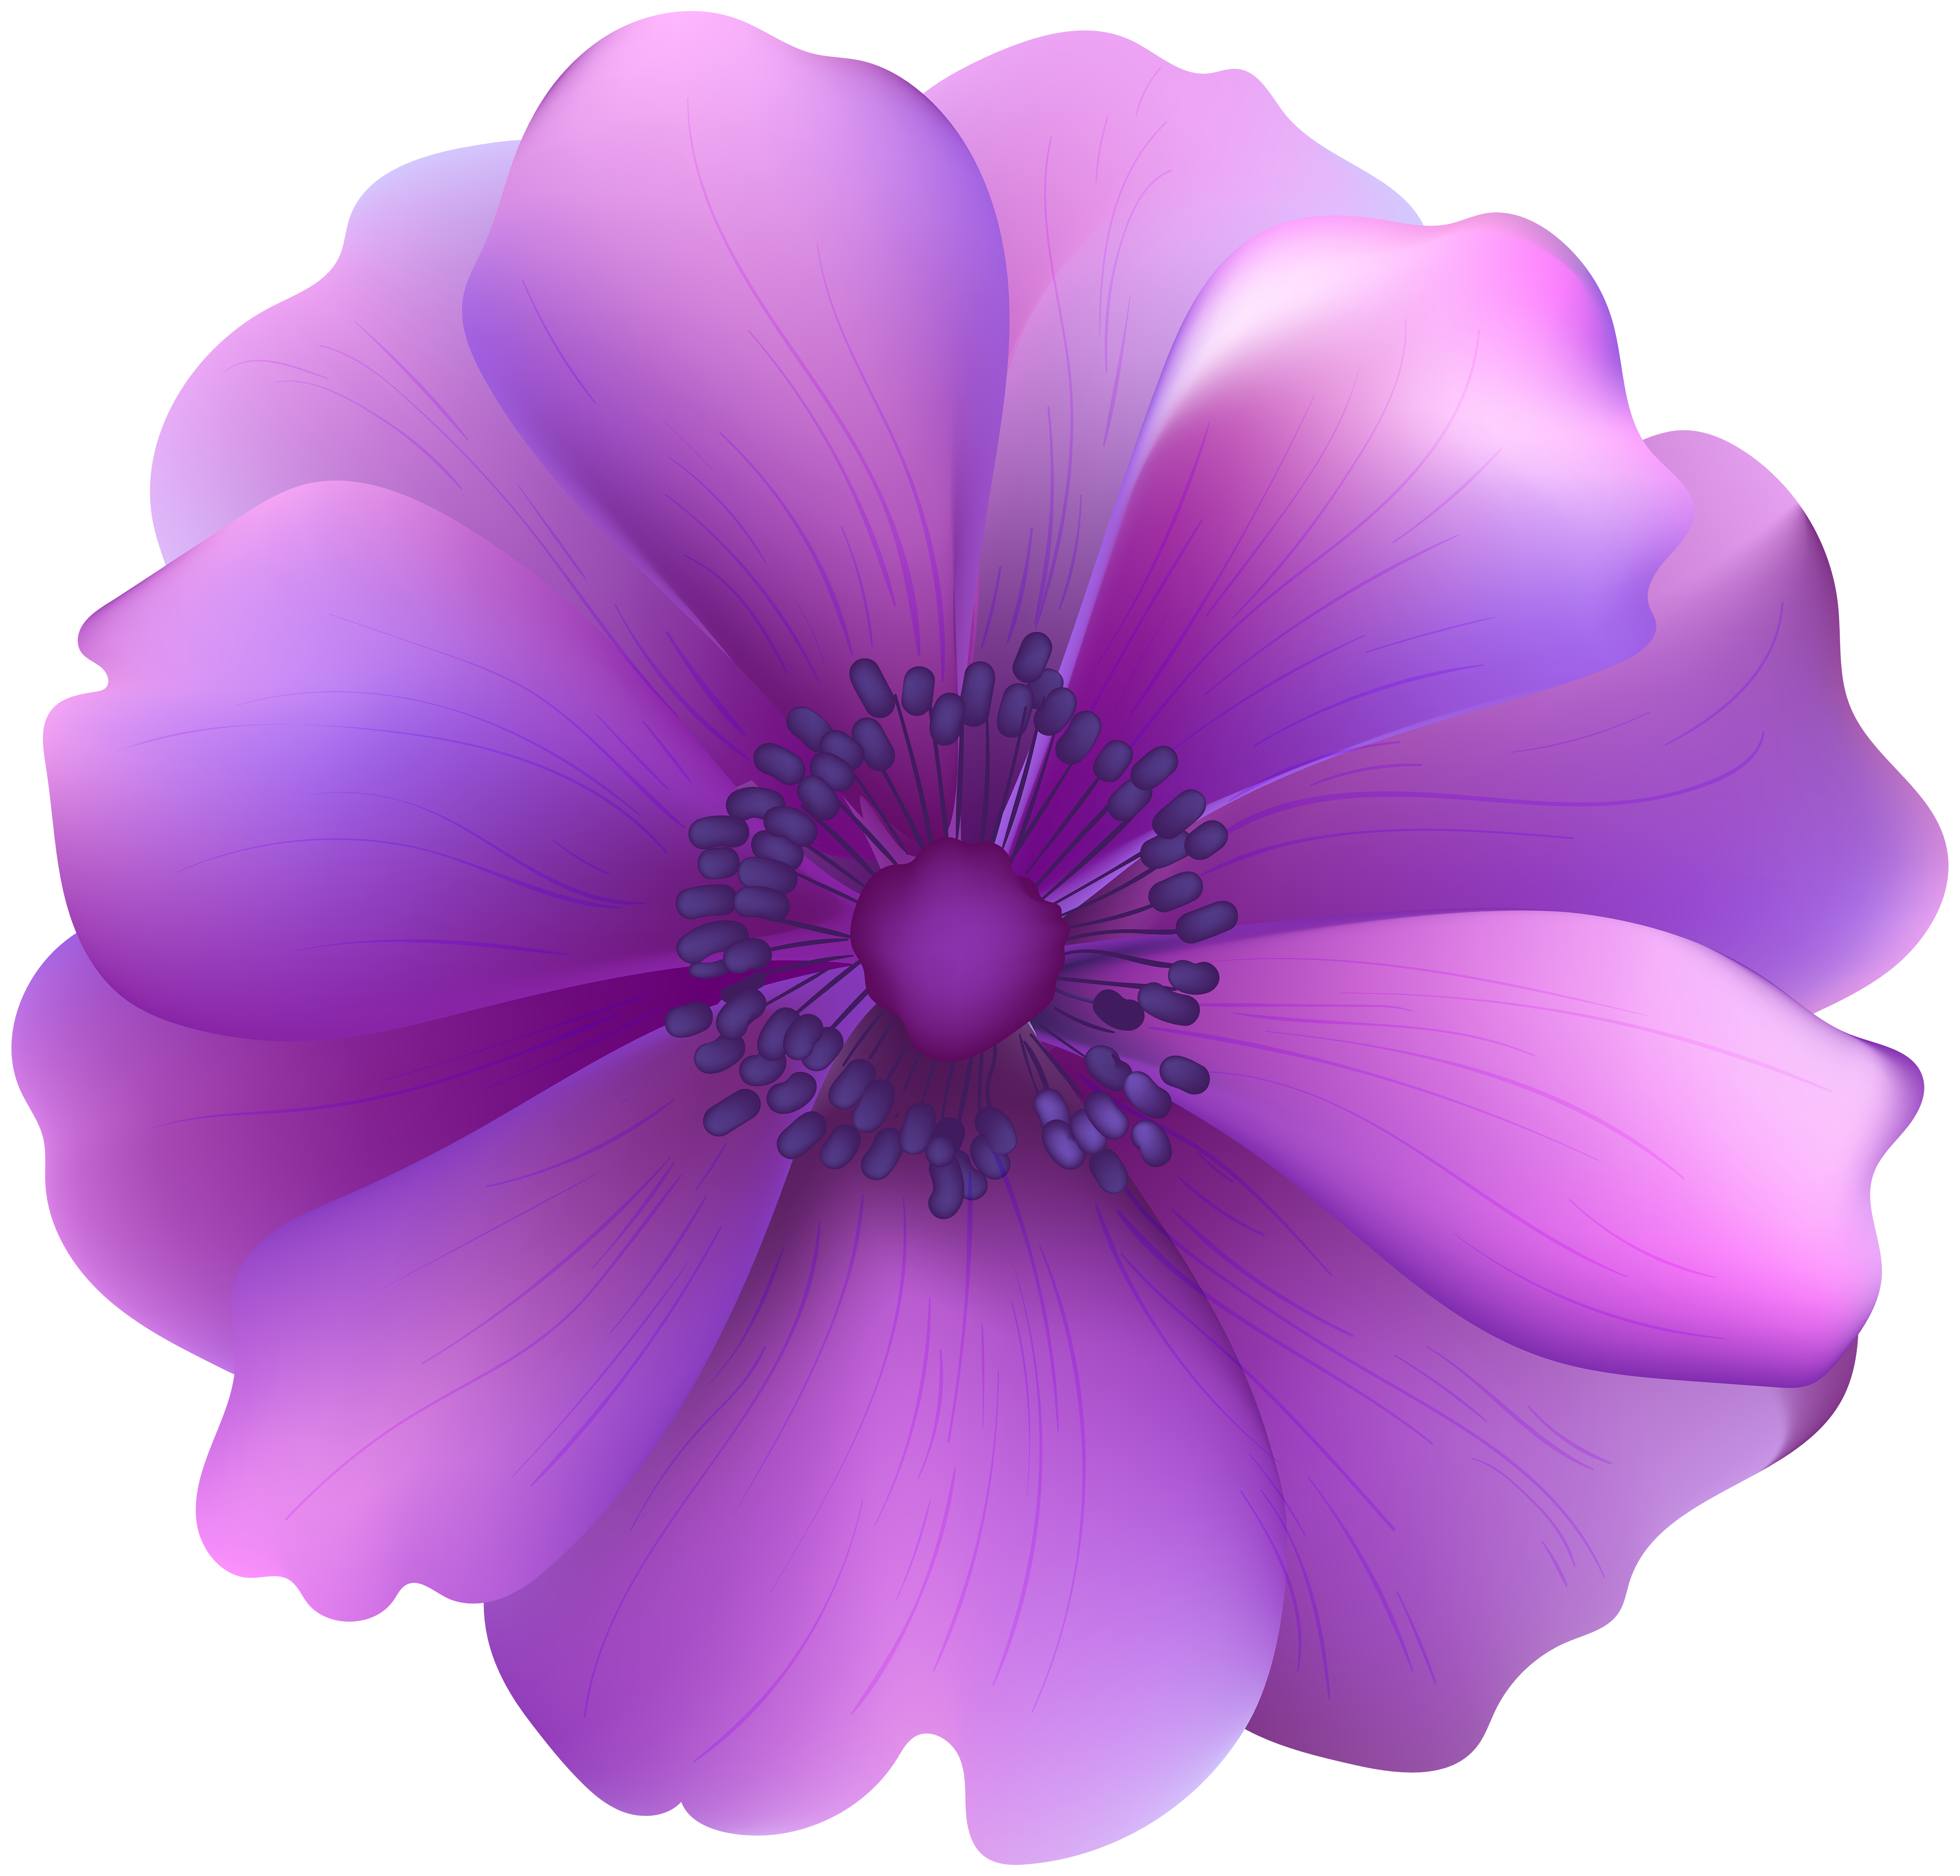 birthday clip art purple bouquet